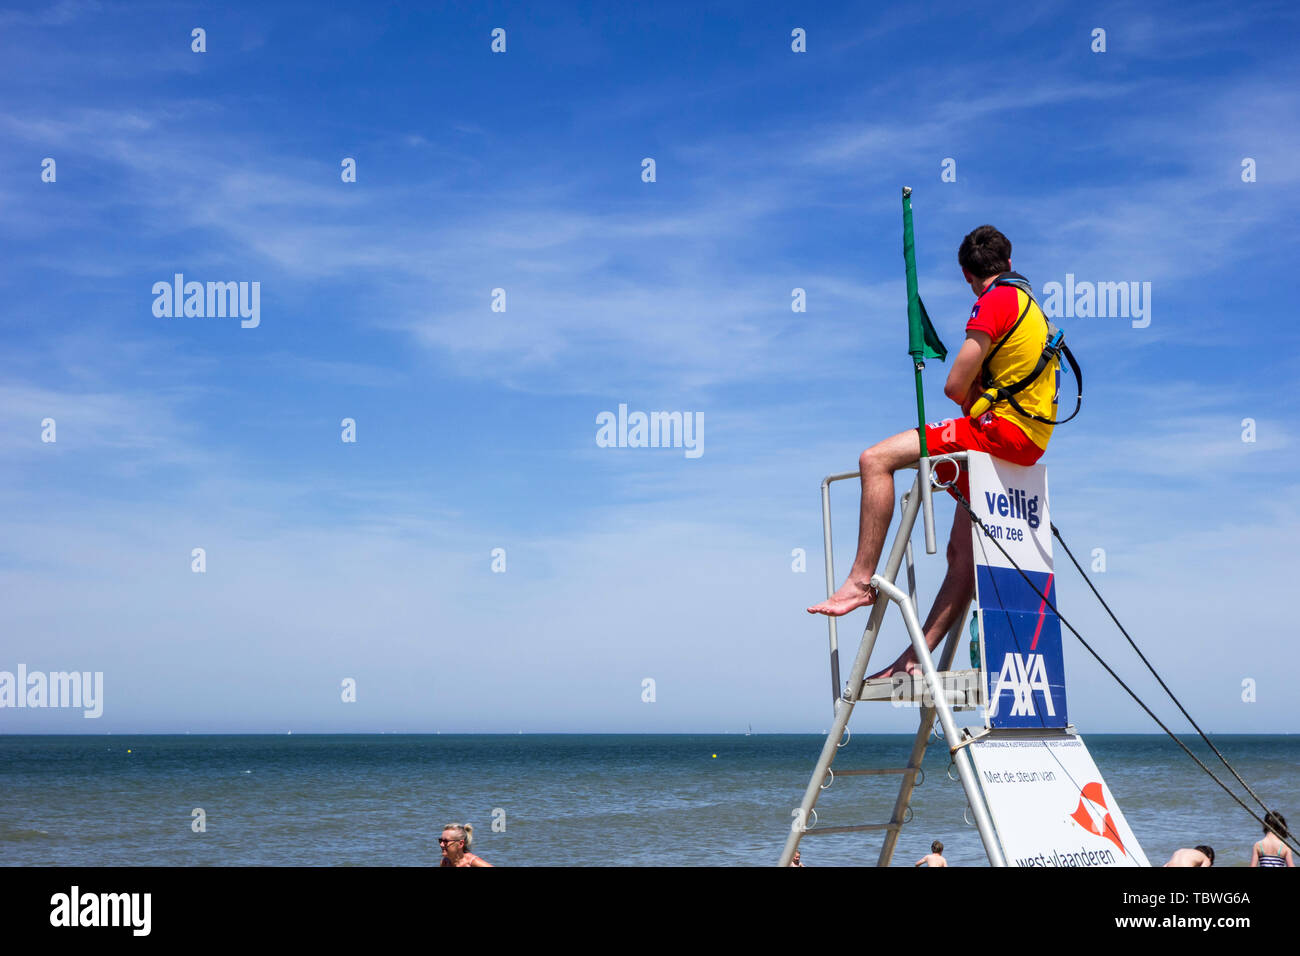 Plage surveillée de surveiller les baigneurs et les nageurs le long de la côte de la mer du Nord en Belgique à partir de la chaise haute portable / tower, Belgique Banque D'Images